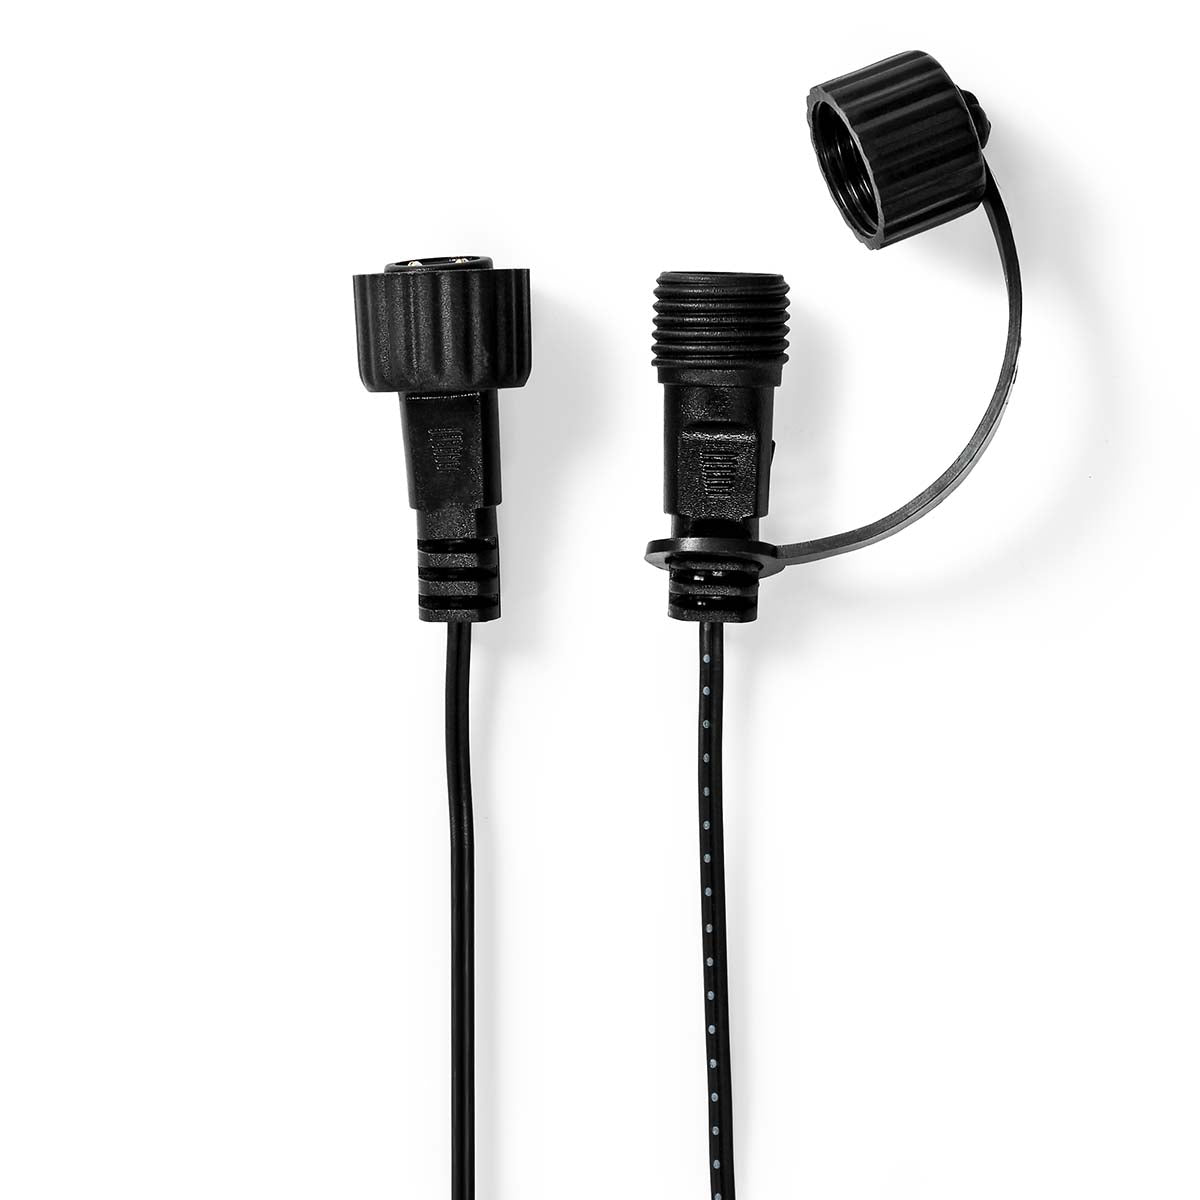 SmartLife LED-Zubehör Kabel 3m schwarz jetzt kaufen - Aktionskönig